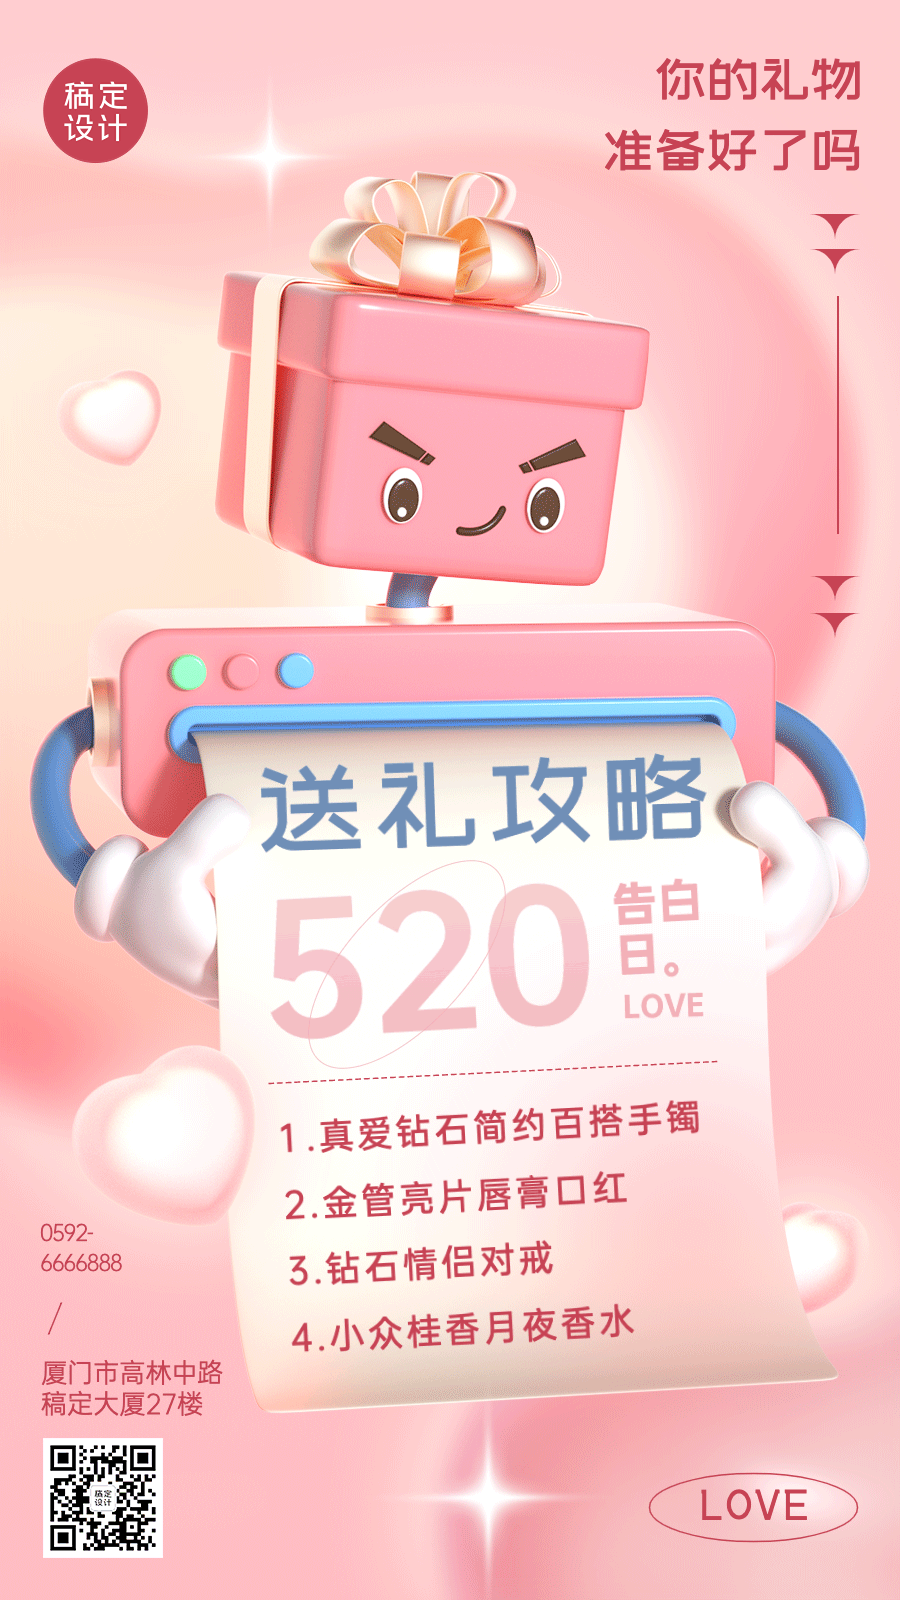 520情人节节日送礼攻略3D手机海报预览效果